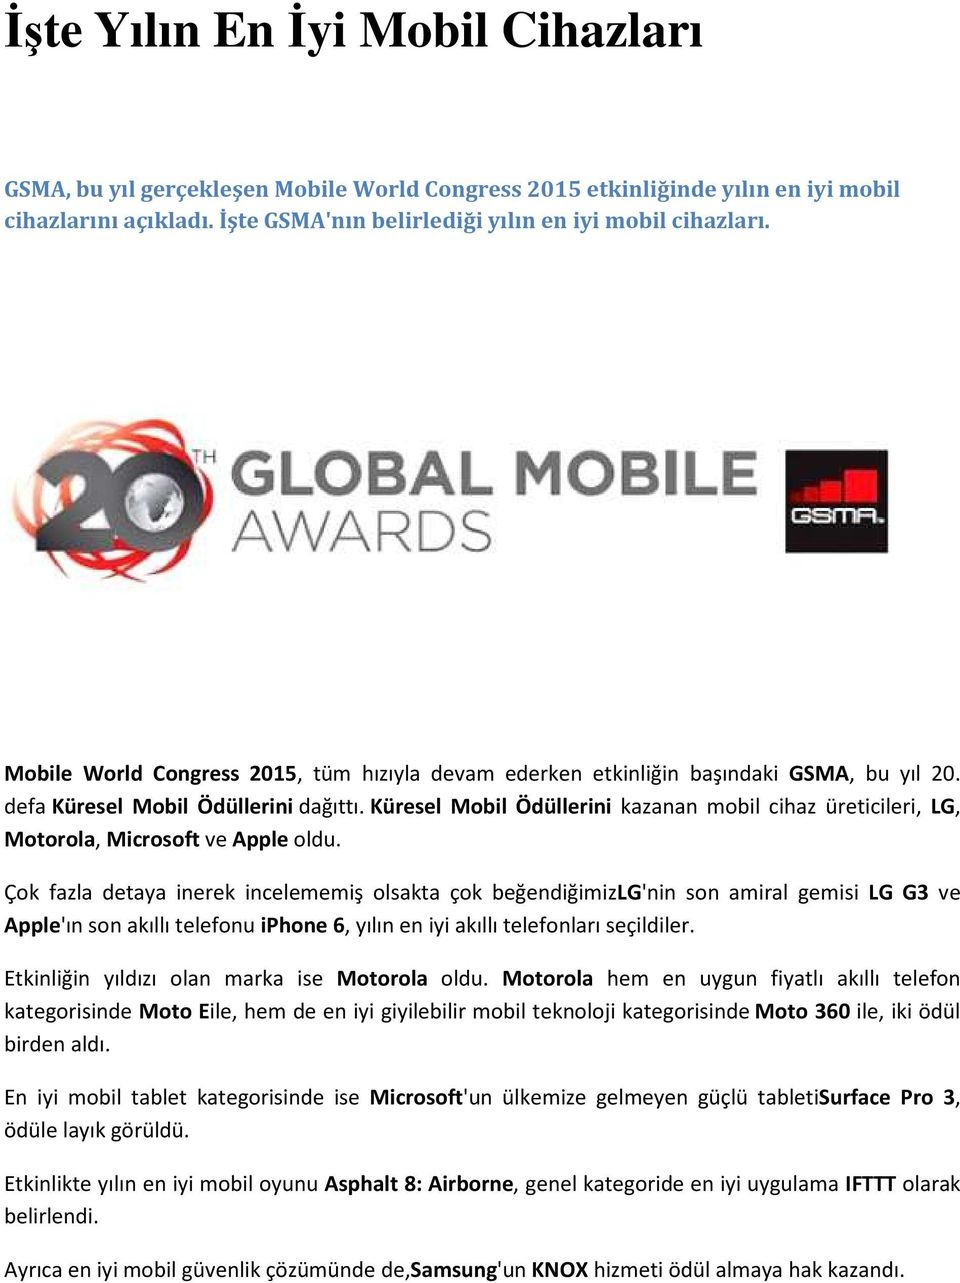 Küresel Mobil Ödüllerini kazanan mobil cihaz üreticileri, LG, Motorola, Microsoft ve Apple oldu.